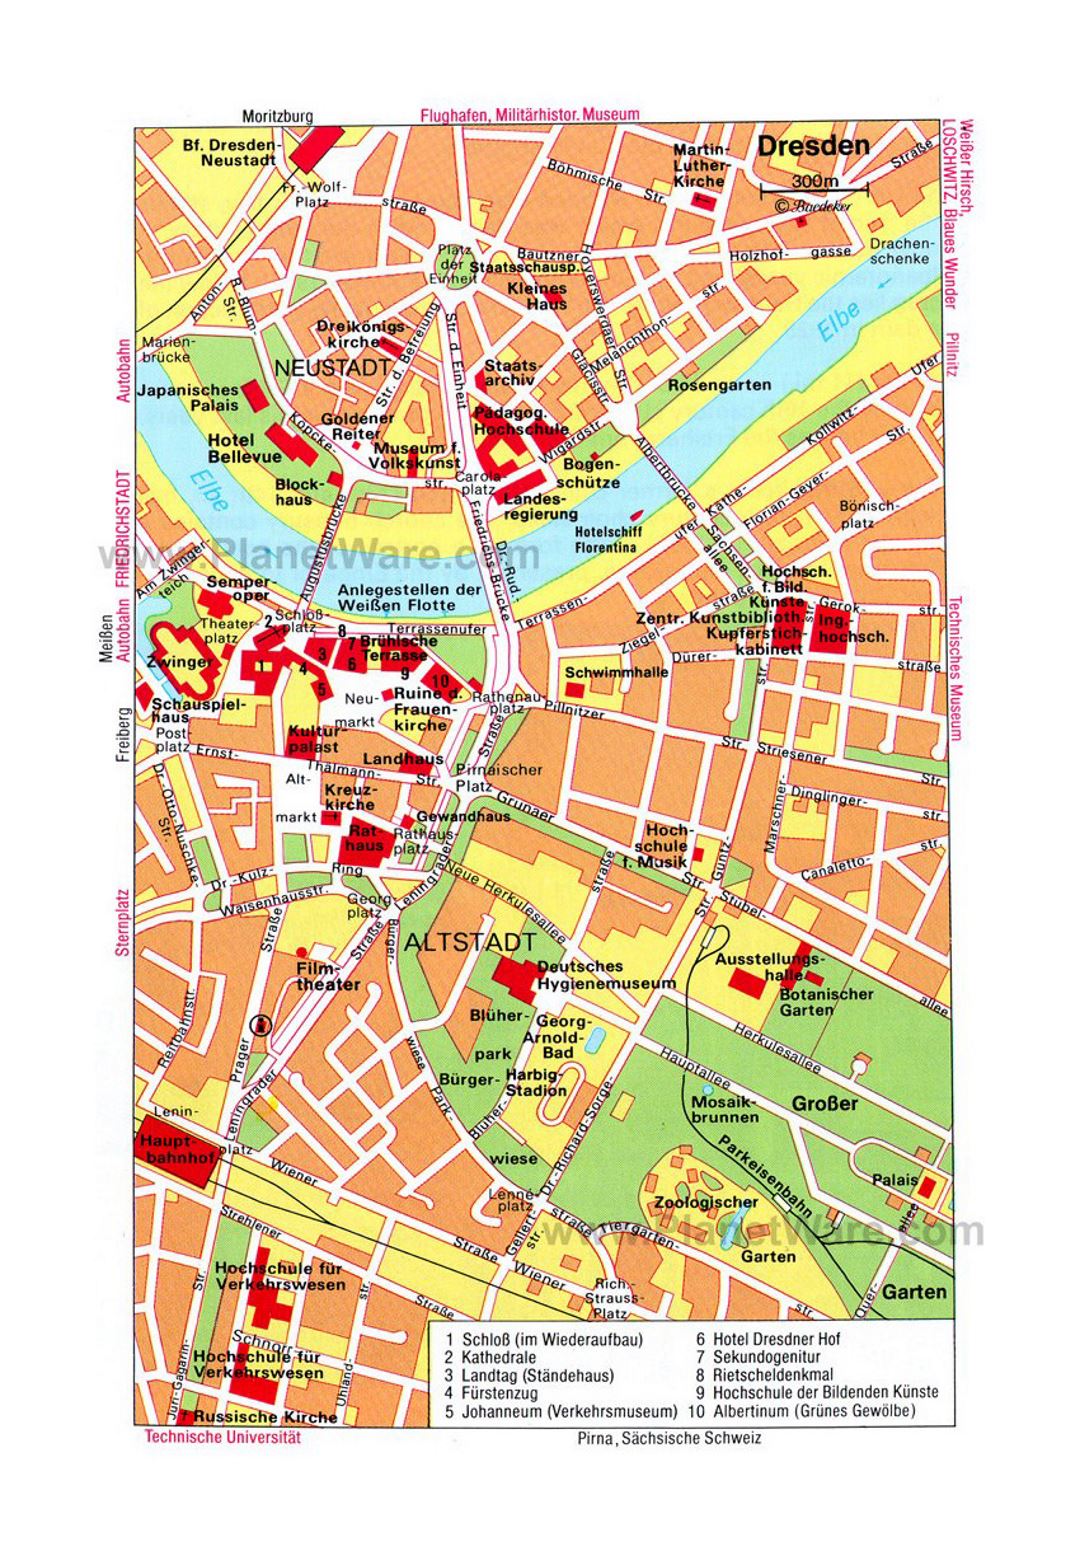 Mapa de la detallada de la parte central de la ciudad de Dresde